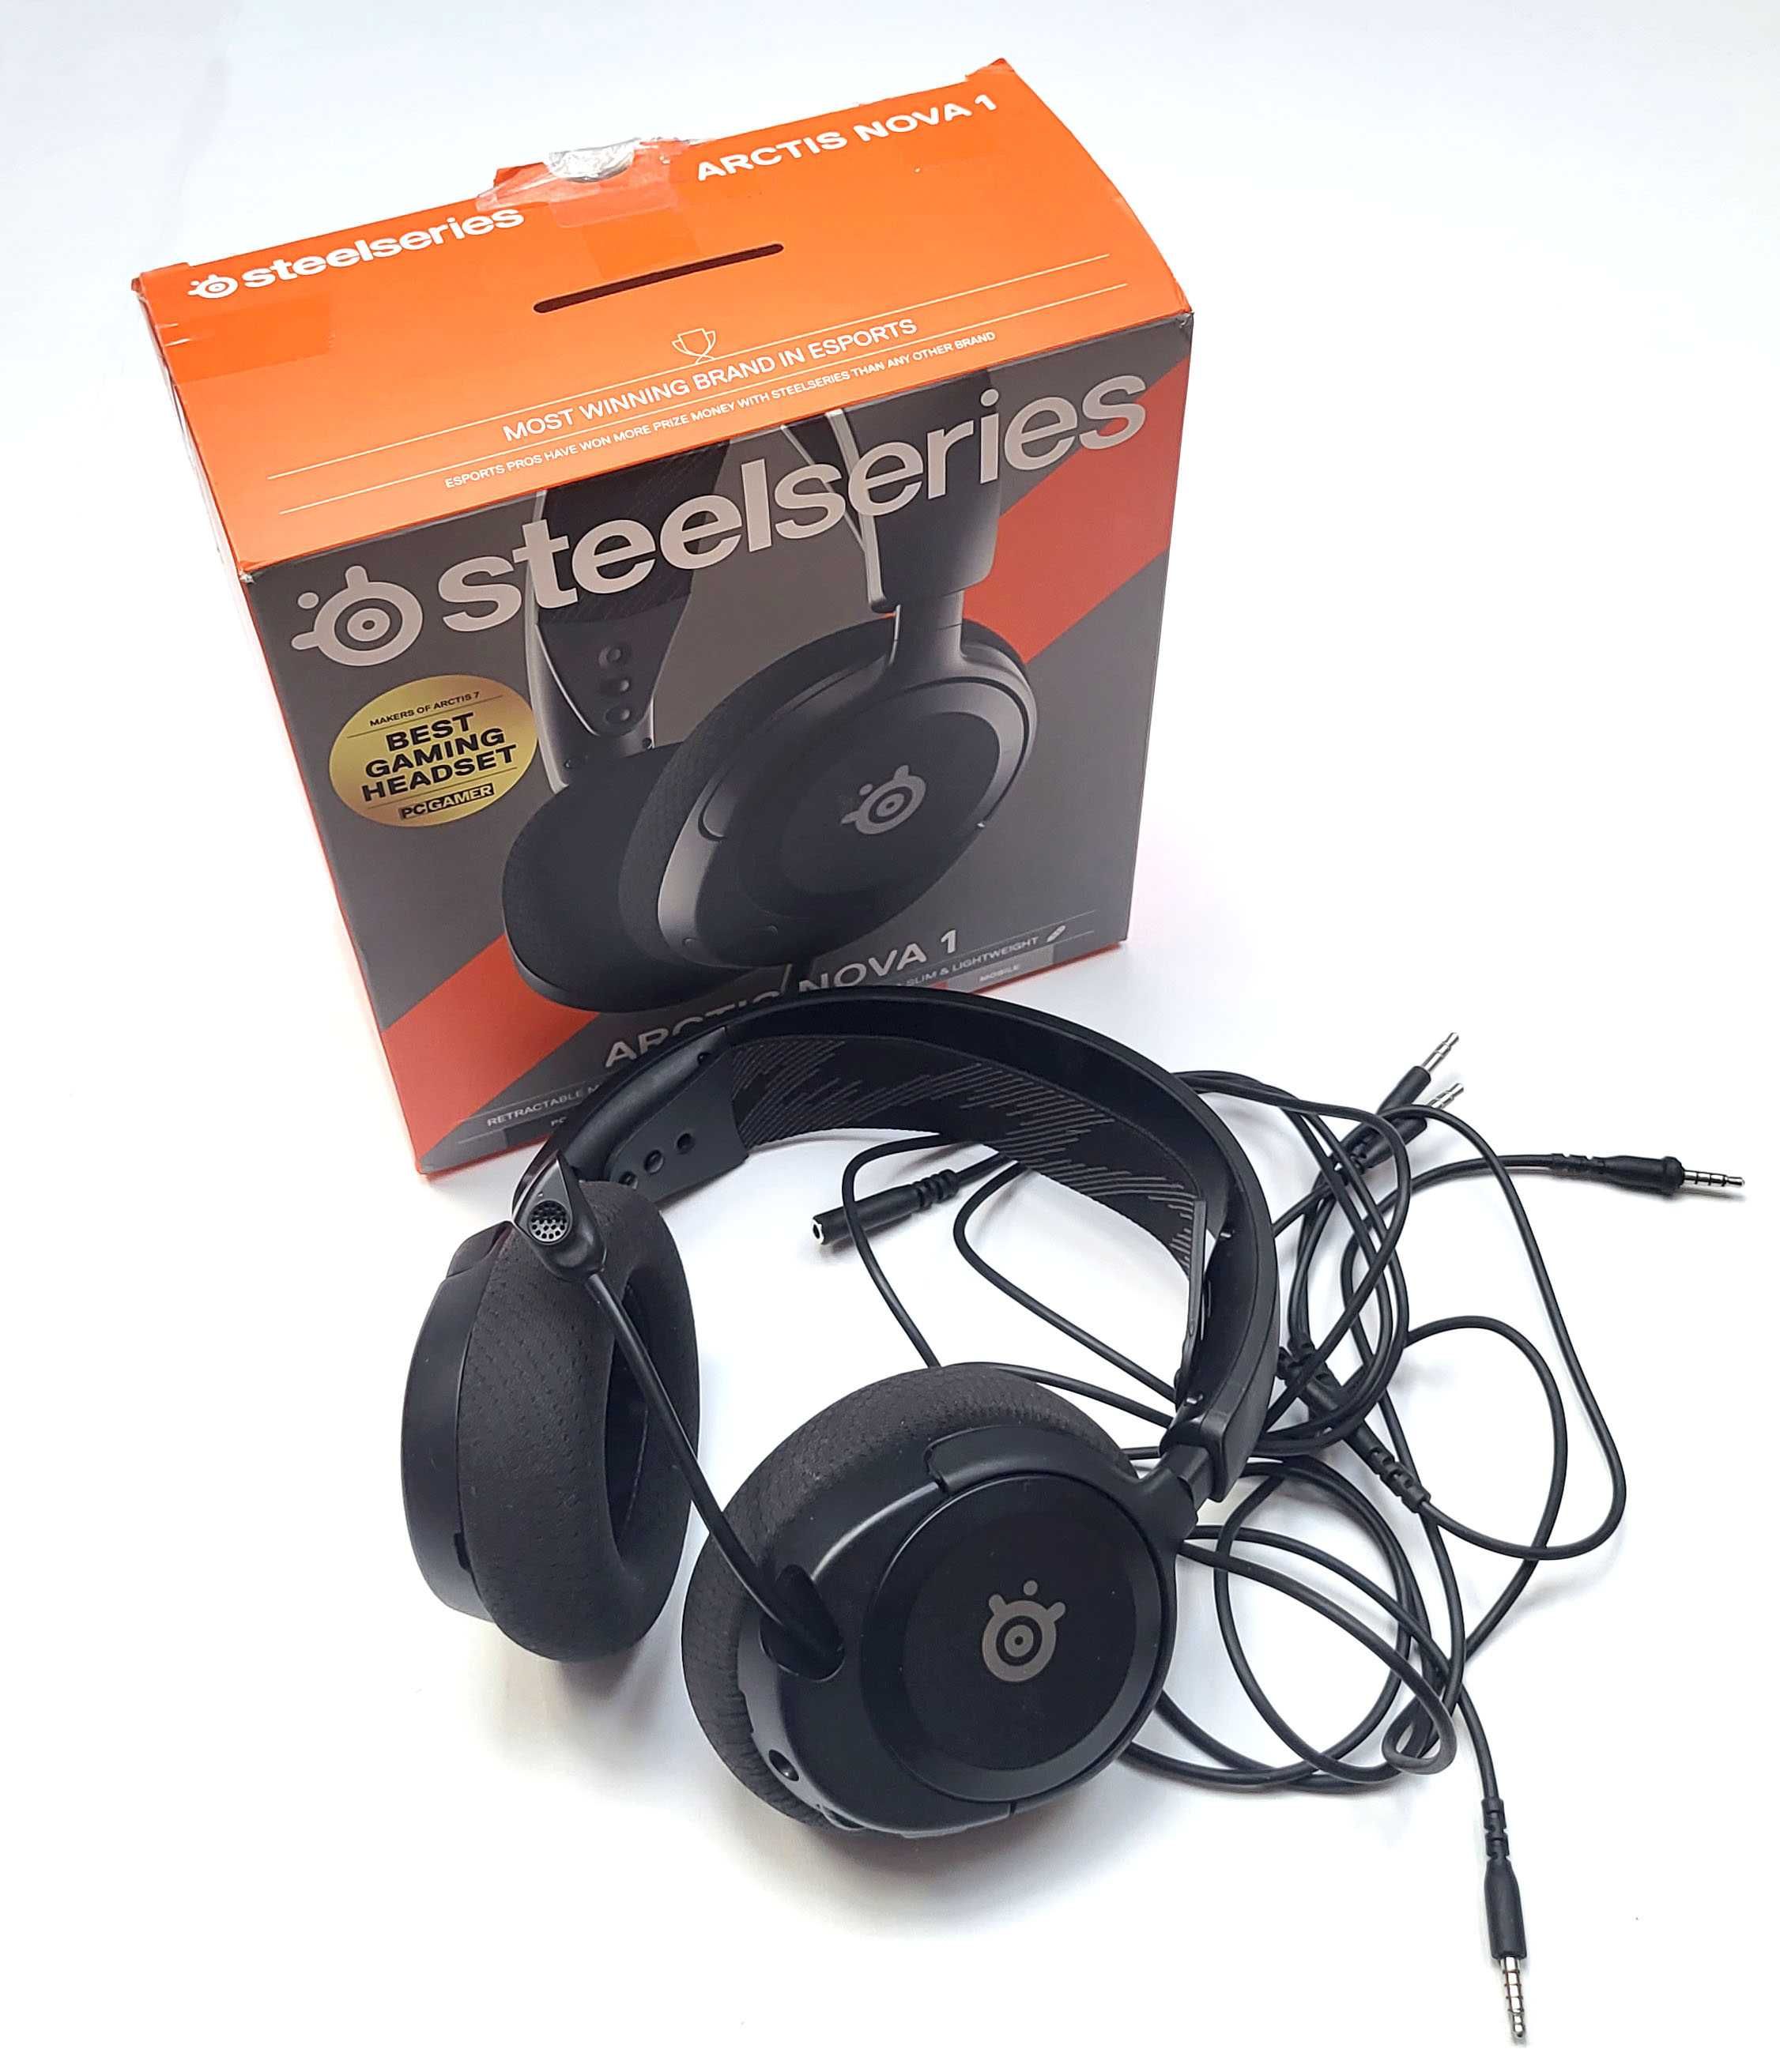 SteelSeries Arctis Nova 1 - Gamingowy zestaw słuchawkowy do